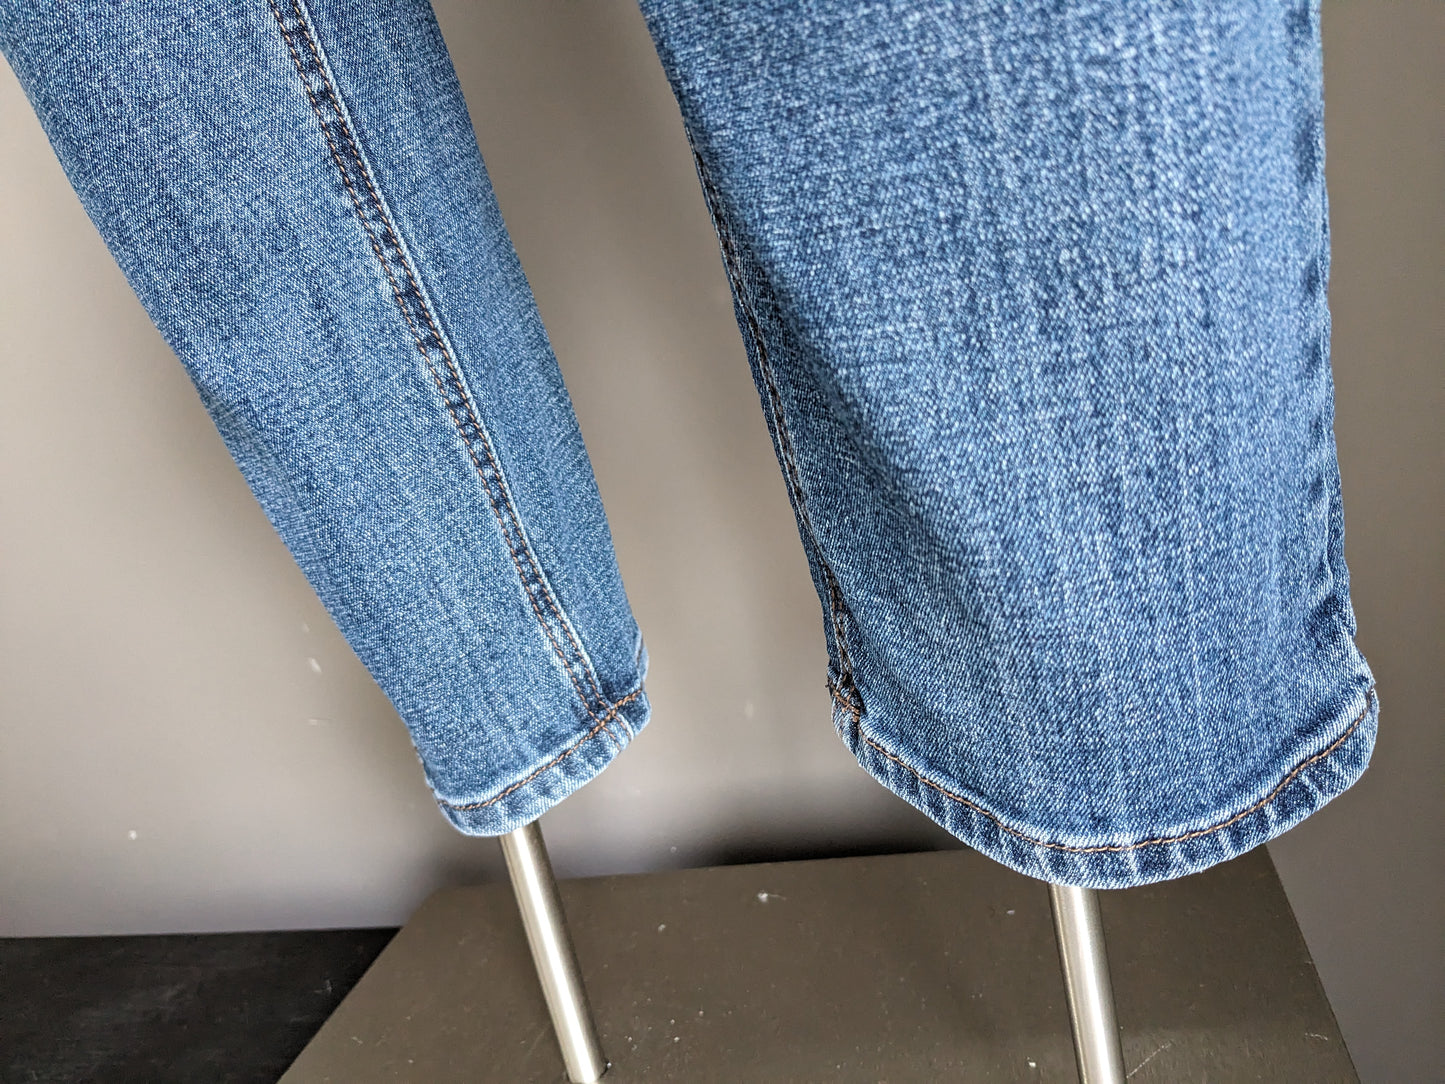 New Star jeans. Blauw gekleurd. Maat W34 - L32. stretch.